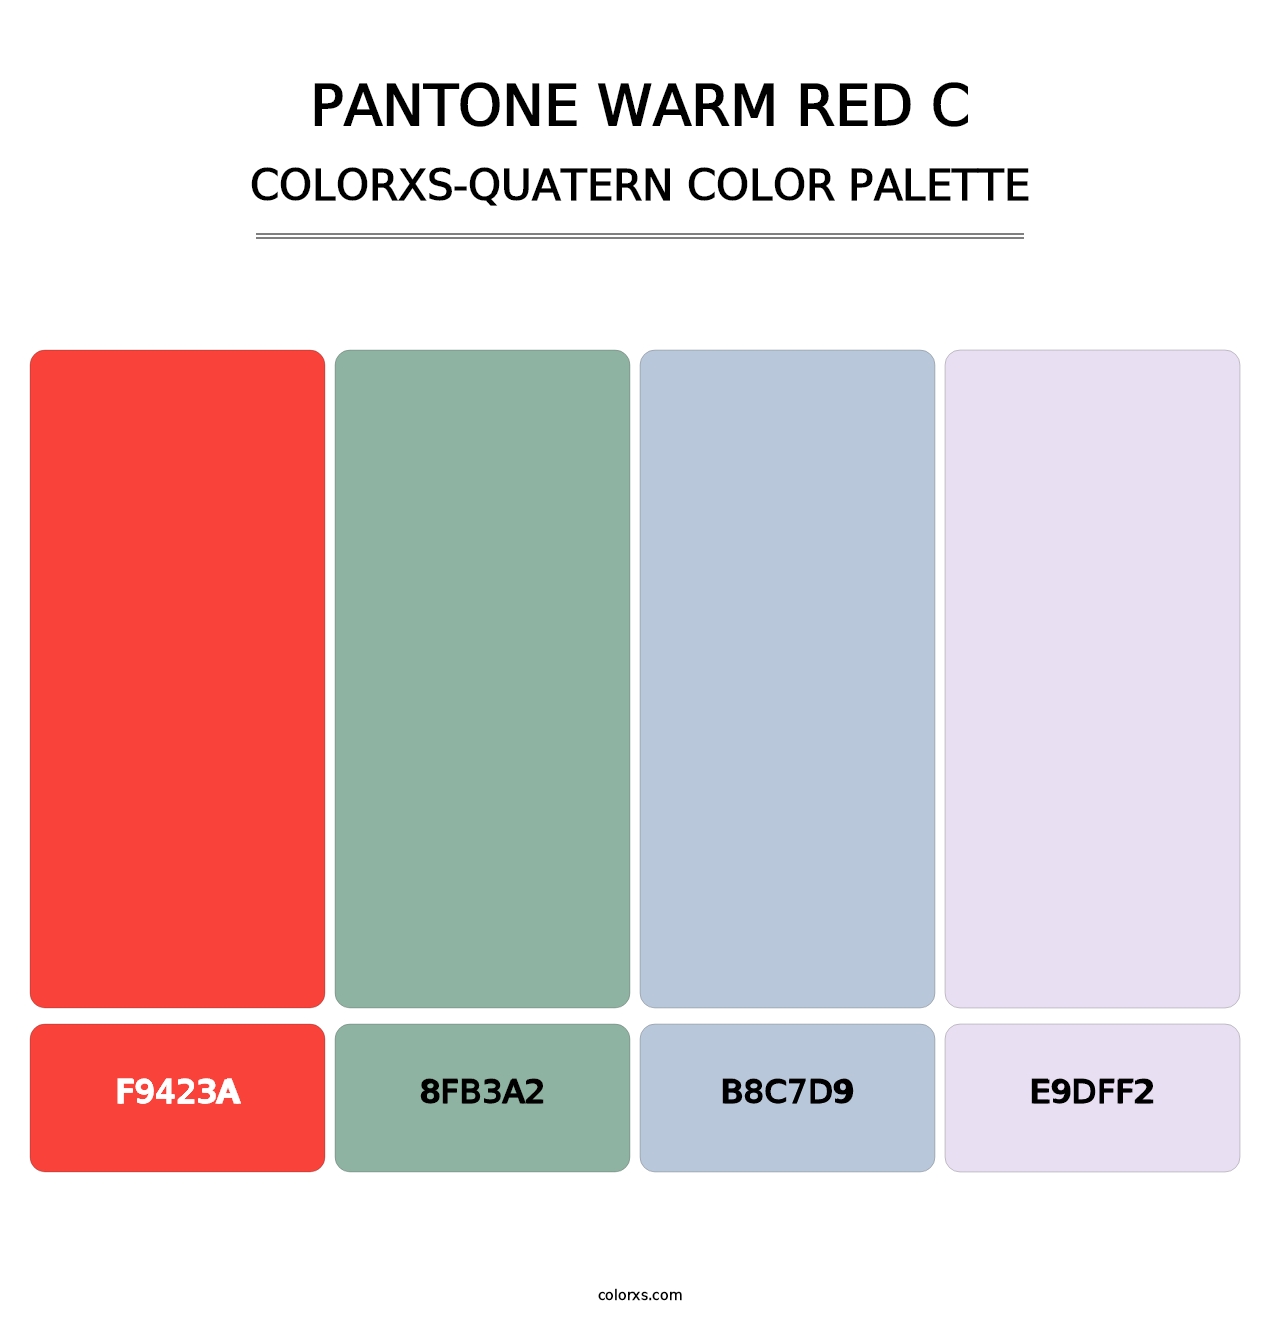 PANTONE Warm Red C - Colorxs Quatern Palette